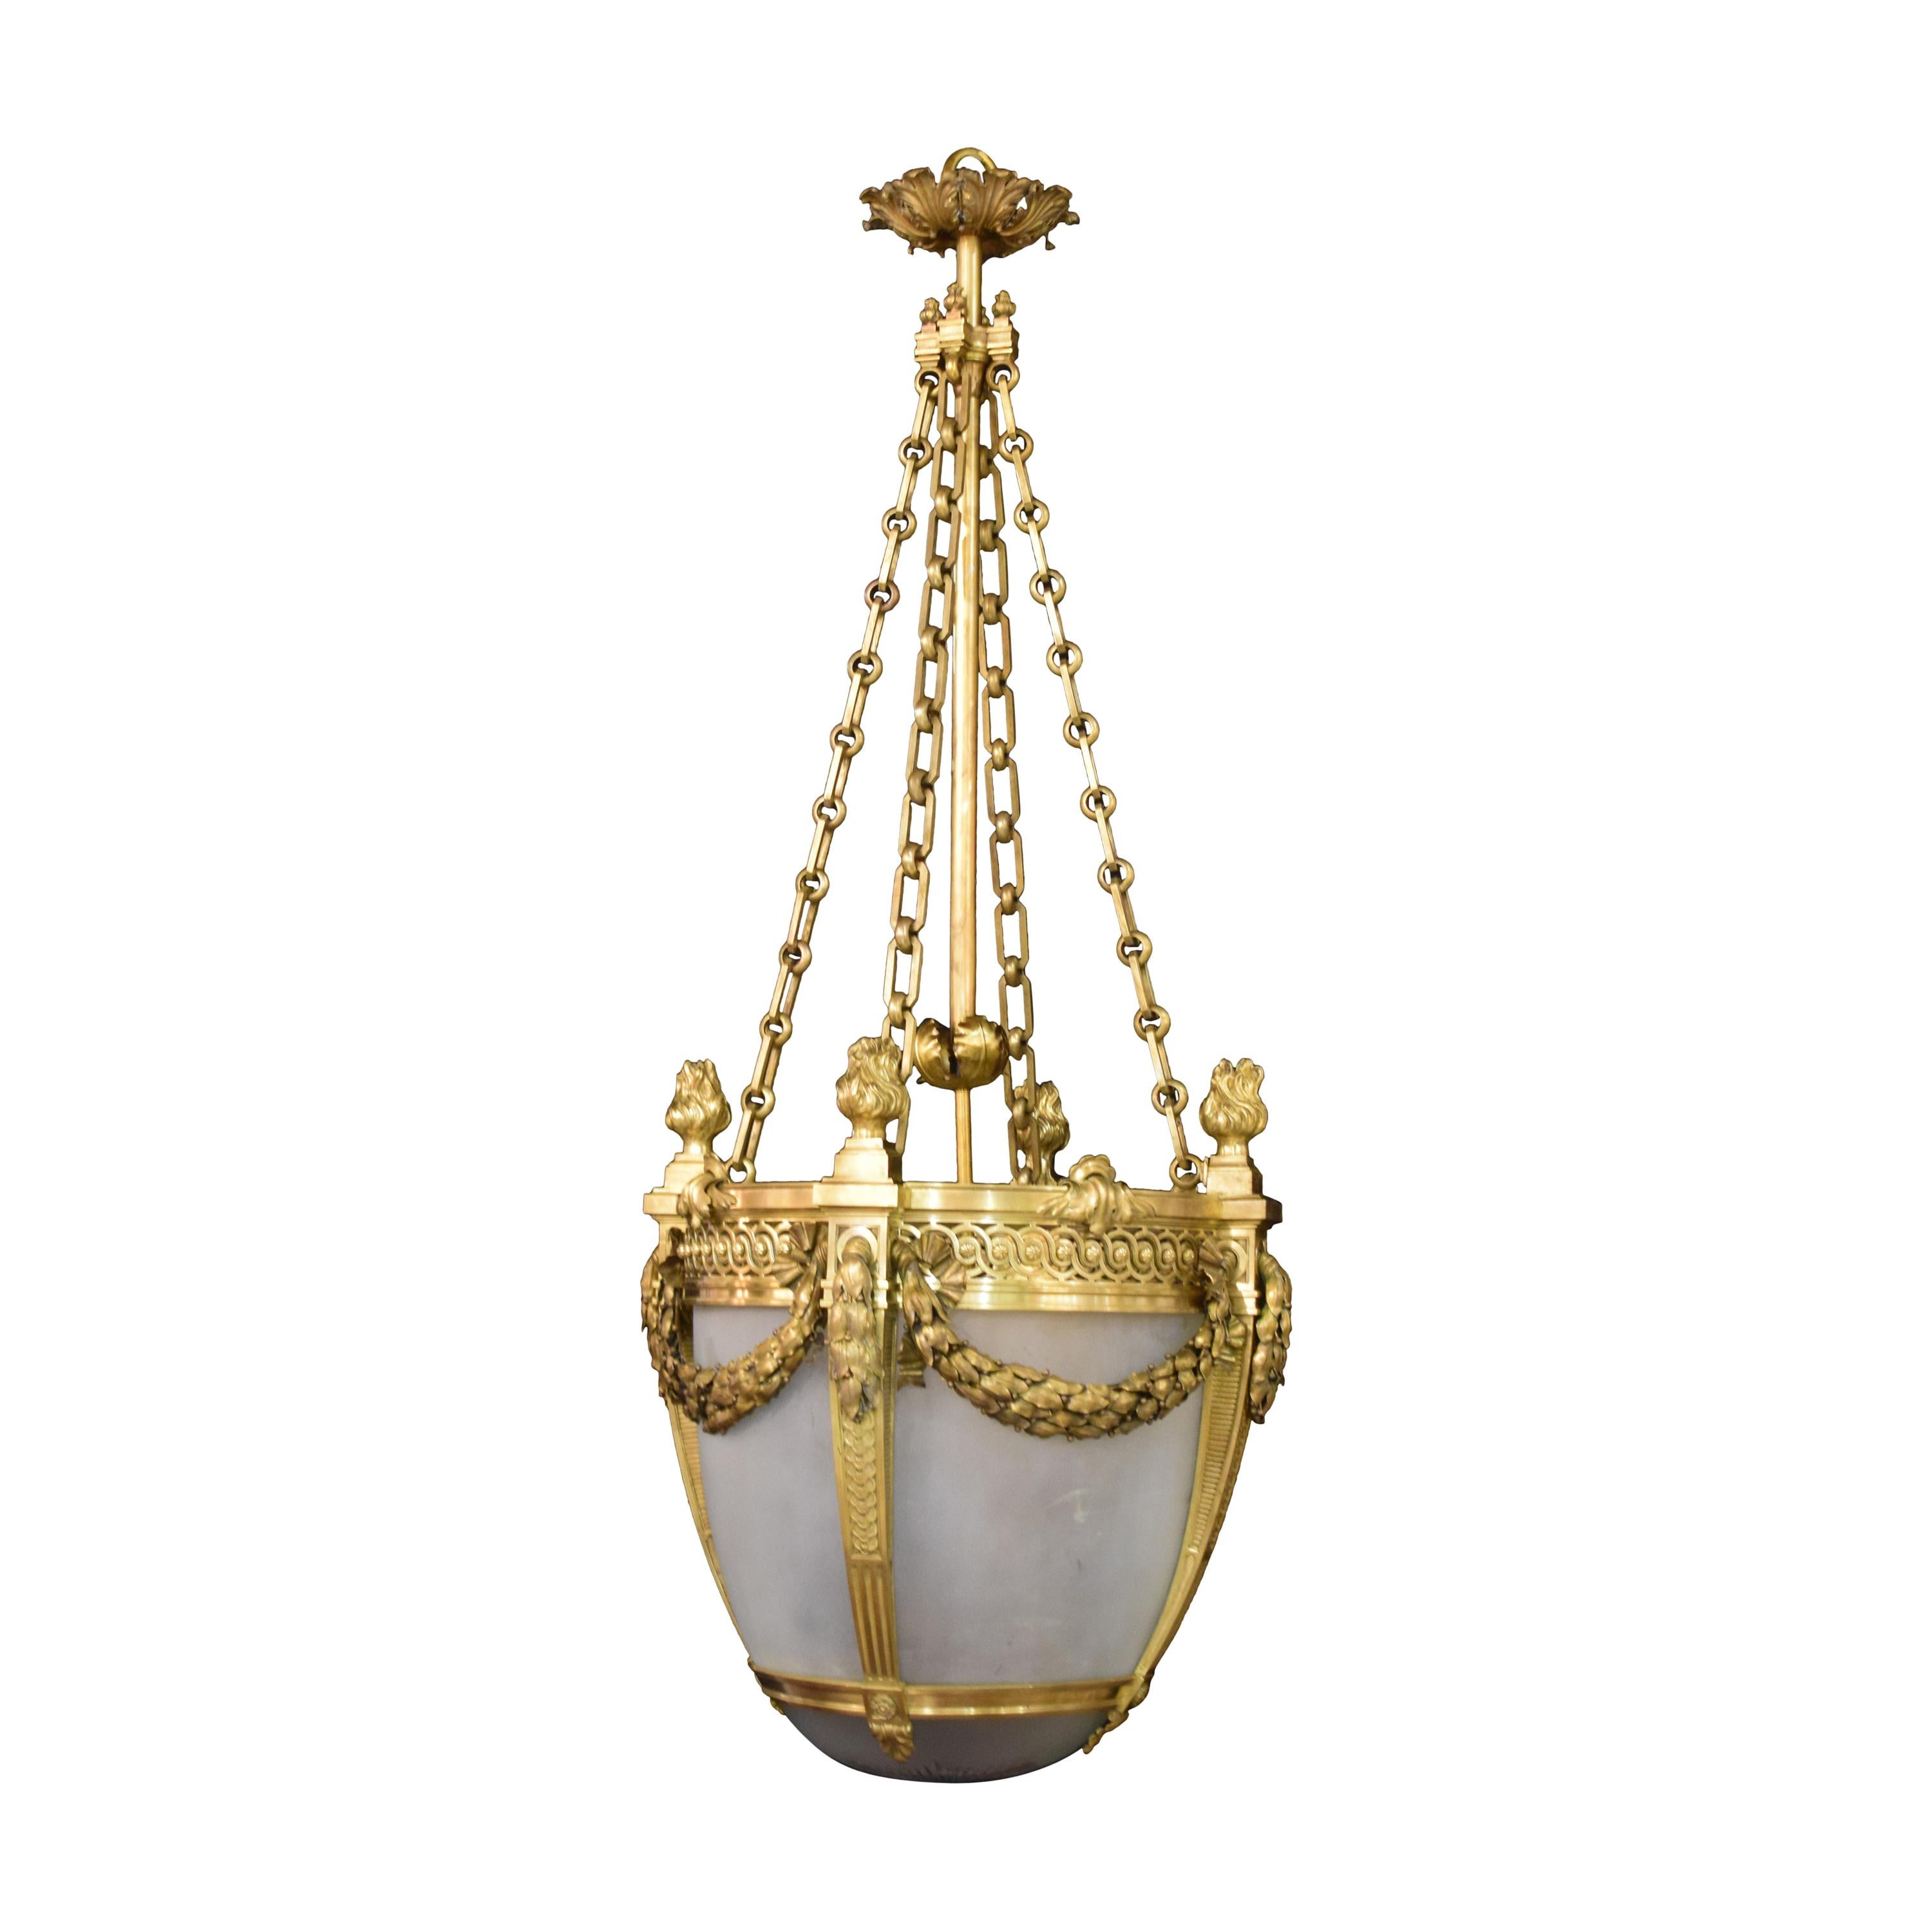 Lanterne française en bronze doré, datant d'environ 1900